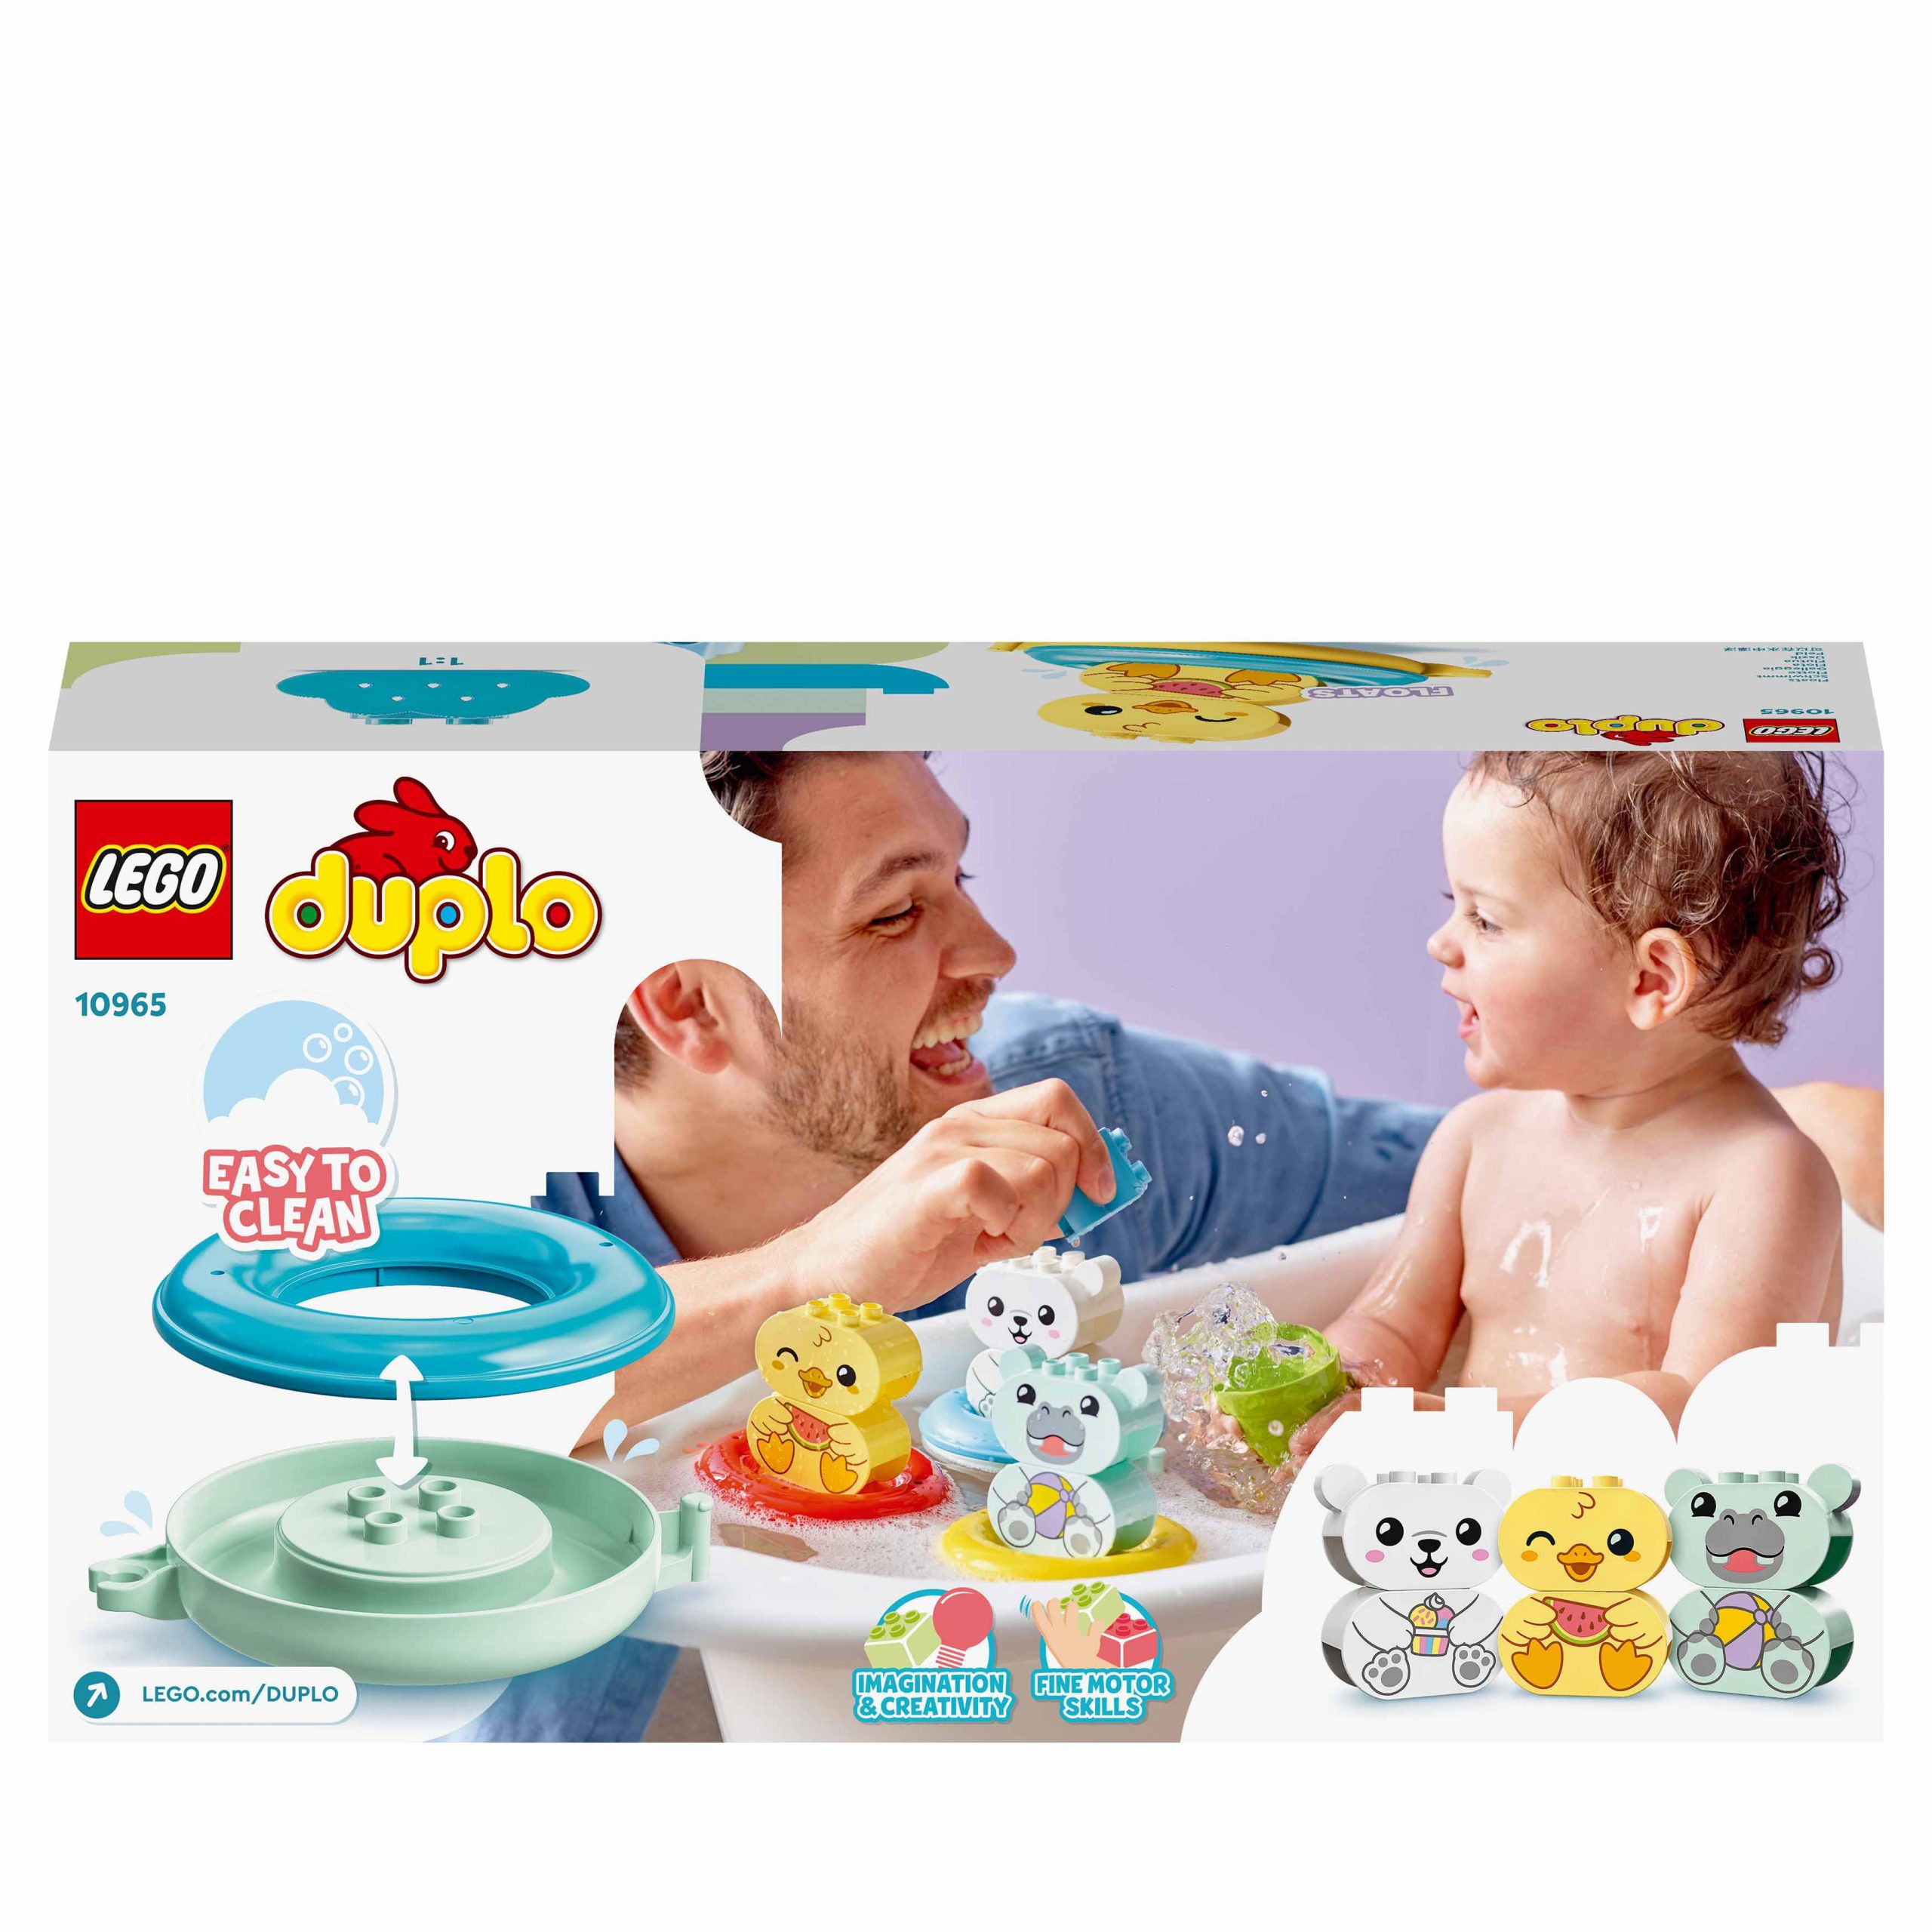 Lego duplo ora del bagnetto: il treno degli animali galleggiante, giochi per vasca da bagno per bambini di 1,5+ anni, 10965 - LEGO DUPLO, Lego